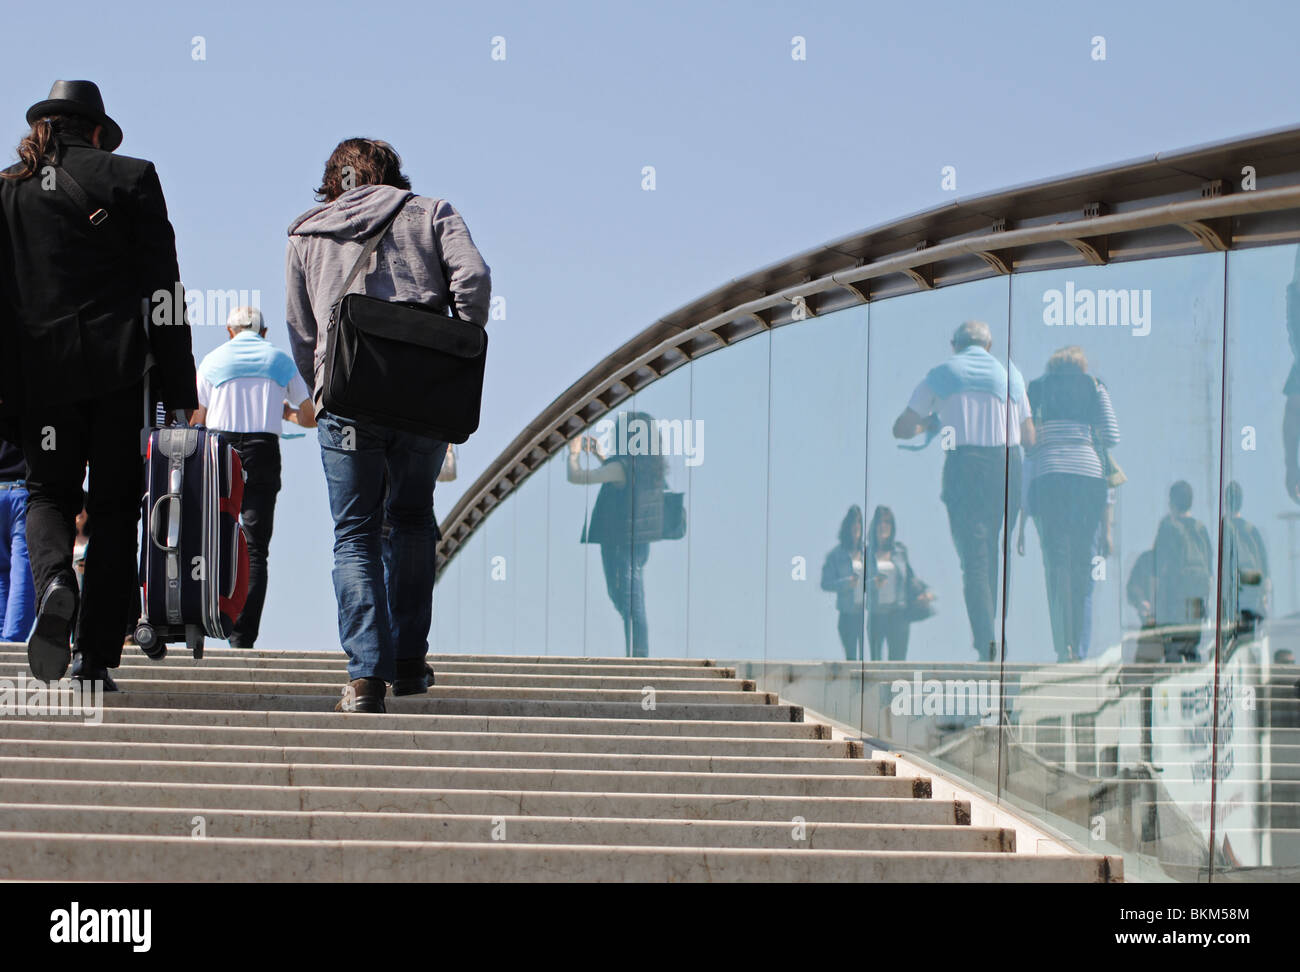 Les gens et réflexions sur pont Calatrava entre les gares routière et ferroviaire de Venise, Italie Banque D'Images